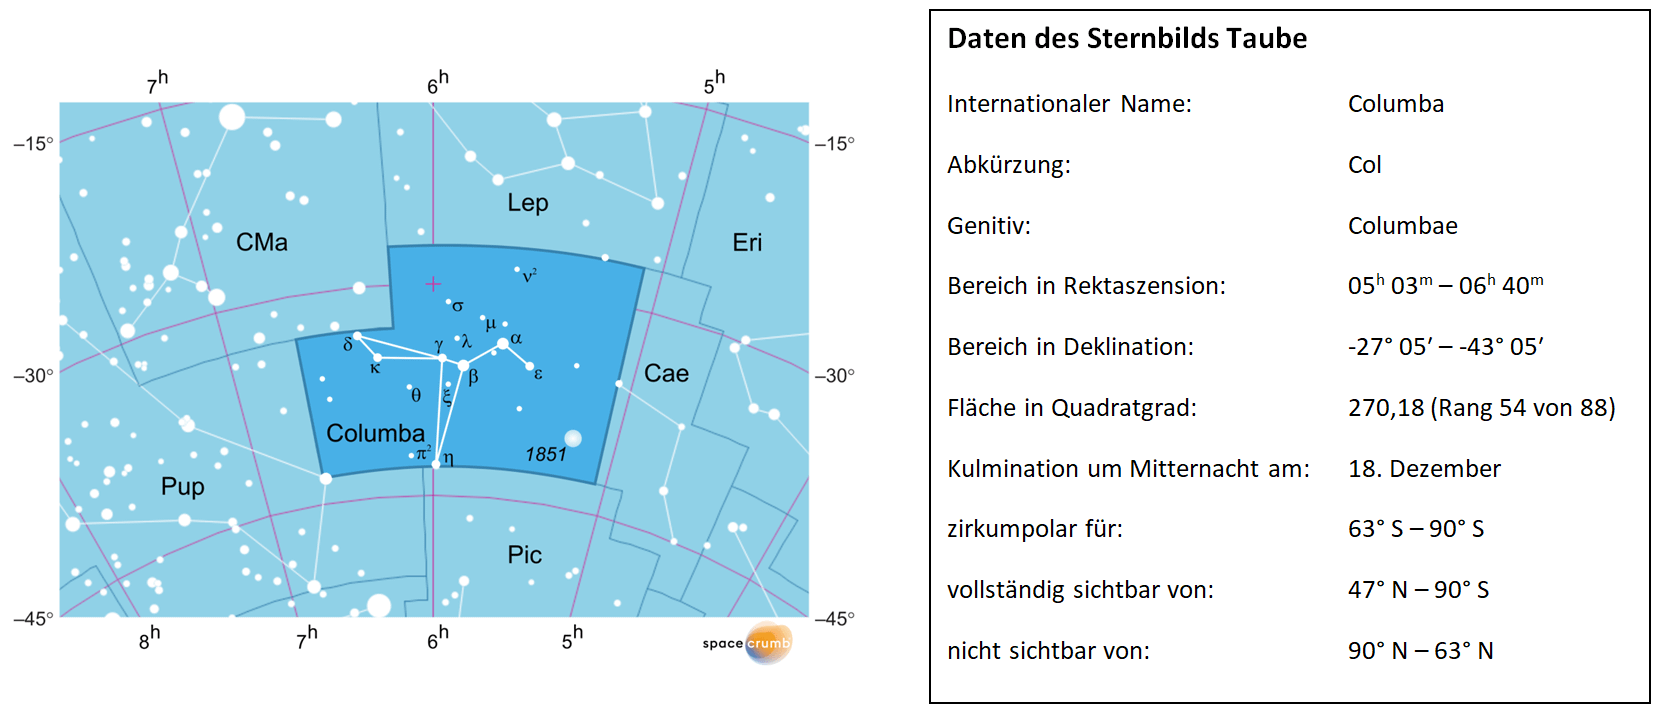 Links zeigt eine mit Koordinaten versehene  Karte eines Himmelsausschnitts weiße Sterne auf hellblauem Hintergrund. Die Fläche, die das Sternbild Taube einnimmt, ist dunkelblau hervorgehoben. Eine Tabelle rechts gibt wichtige Daten des Sternbilds Taube an.